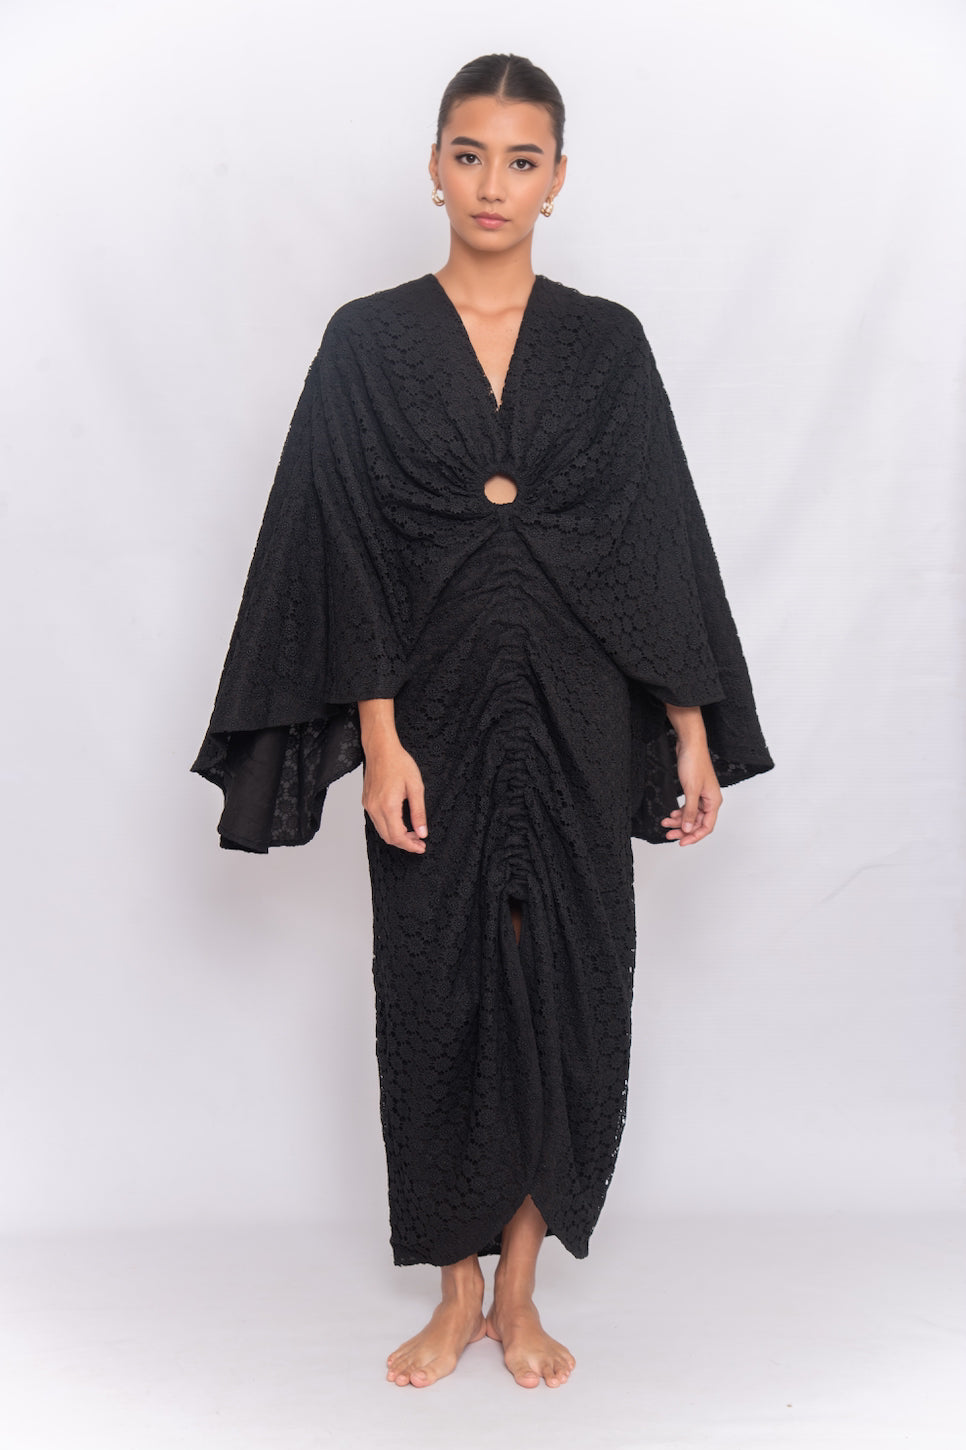 Lo Dress (Black Crochet)